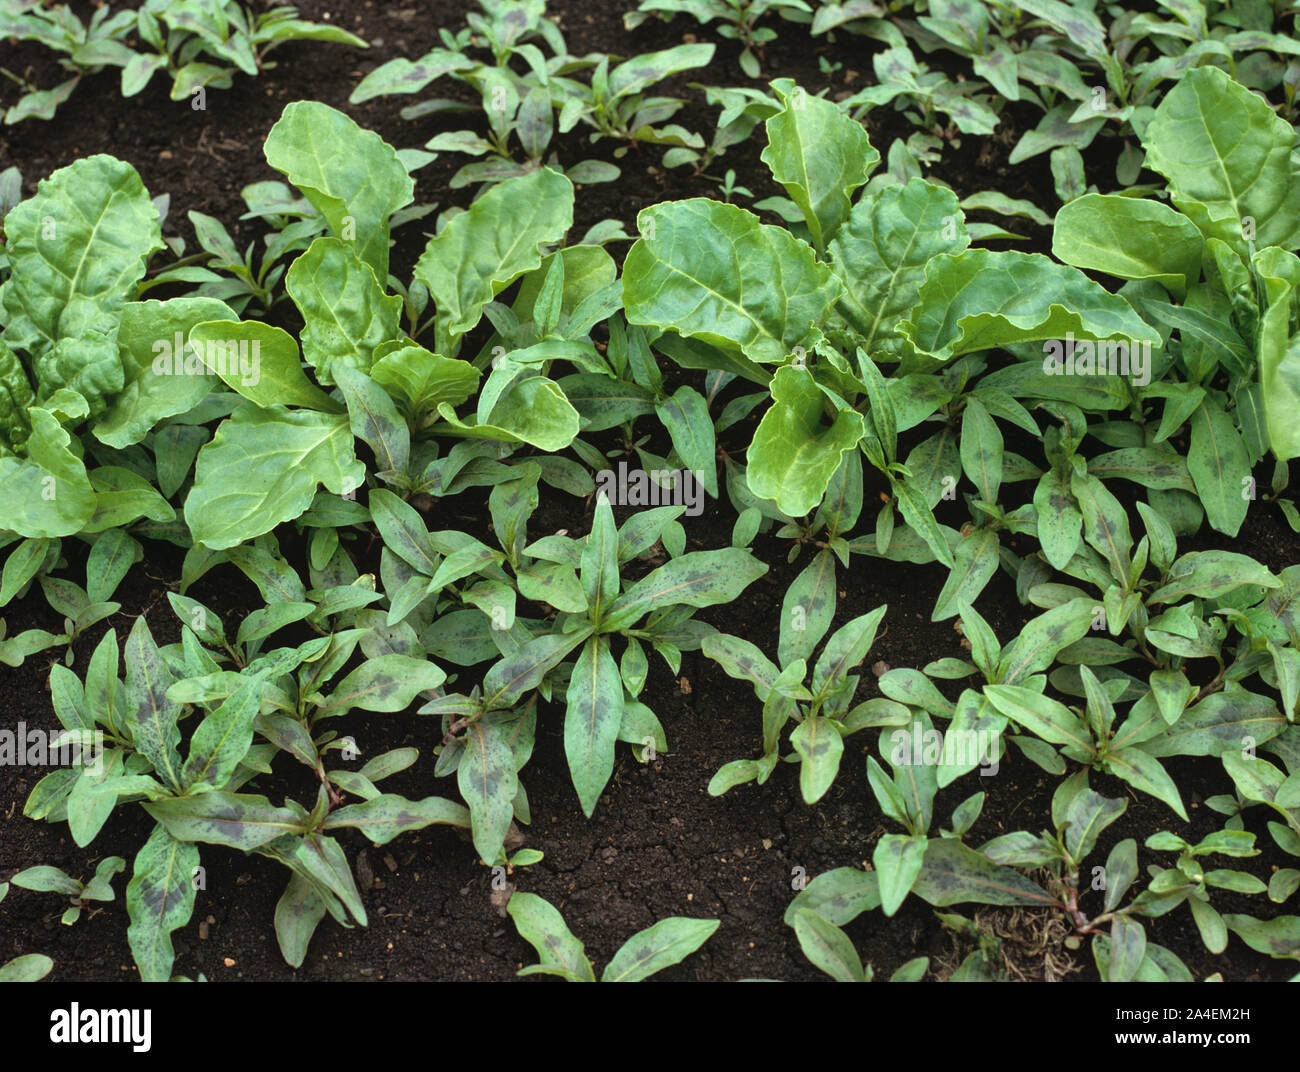 Rotschenkel (Polygonum Maculosa) Unkraut Pflanzen in junge Zuckerrübe auf dunklen fen Boden Stockfoto